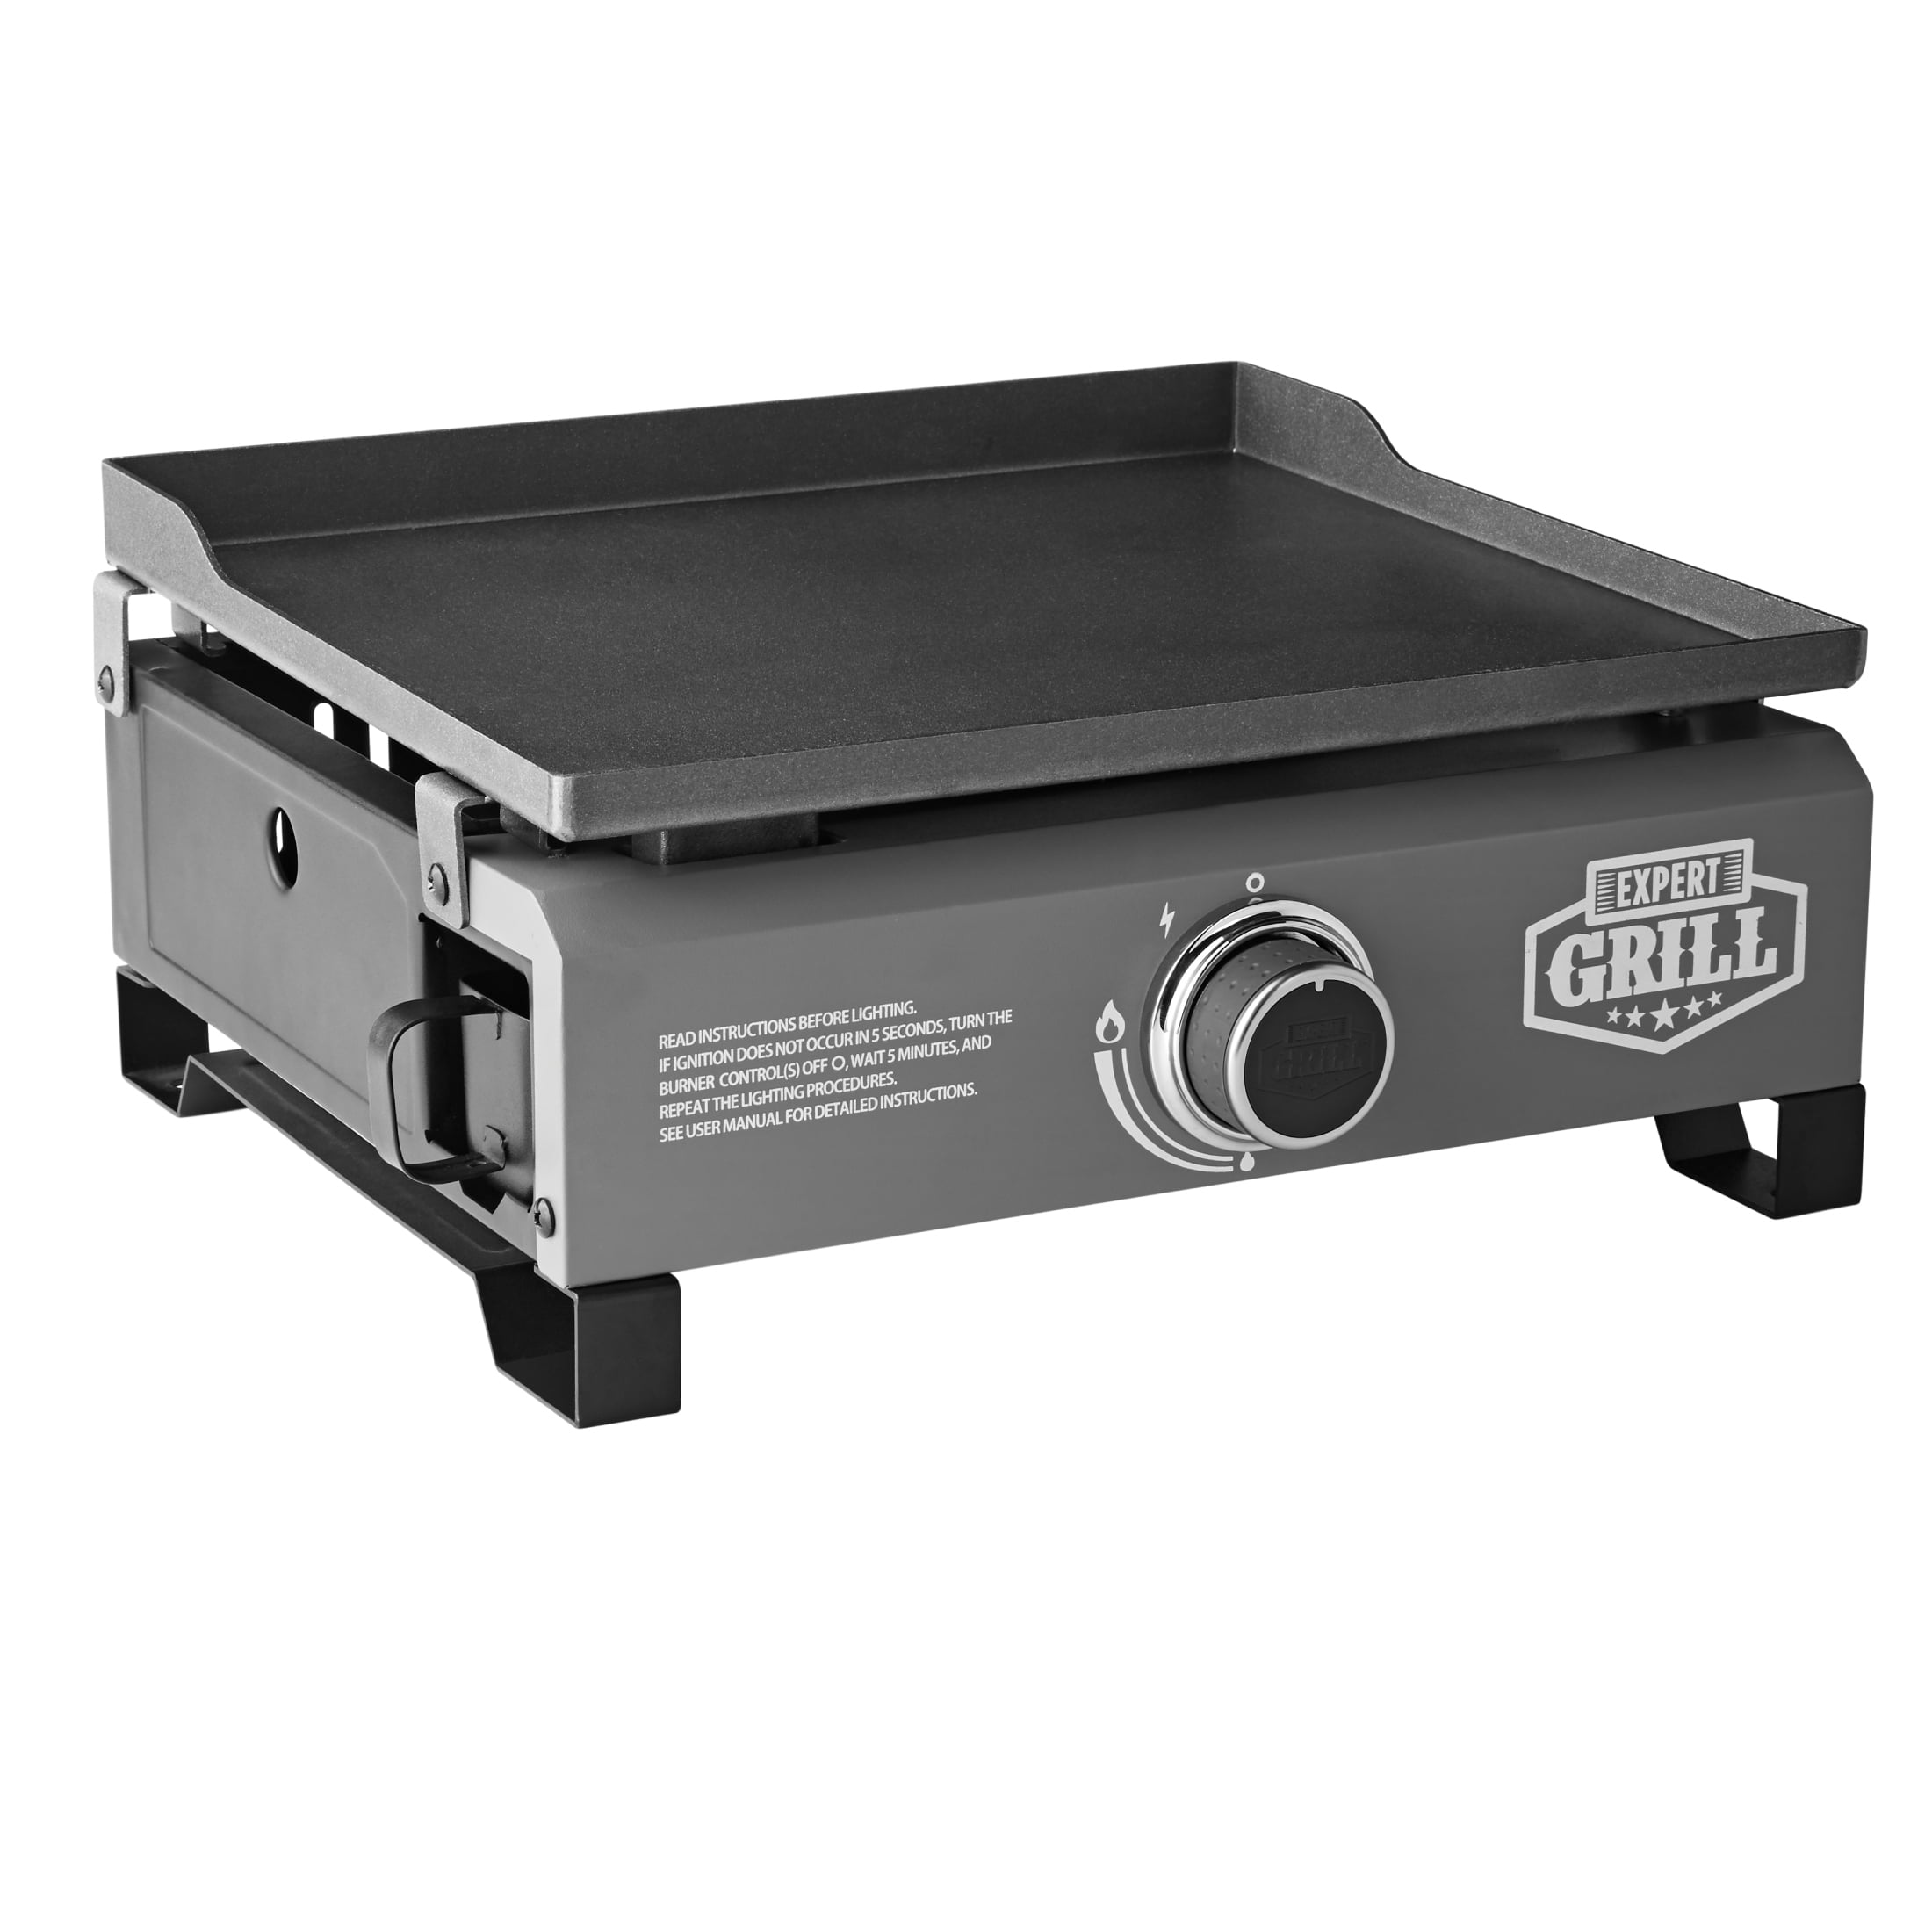 Expert Grill 1-Burner Tabletop Propane Gas Griddle